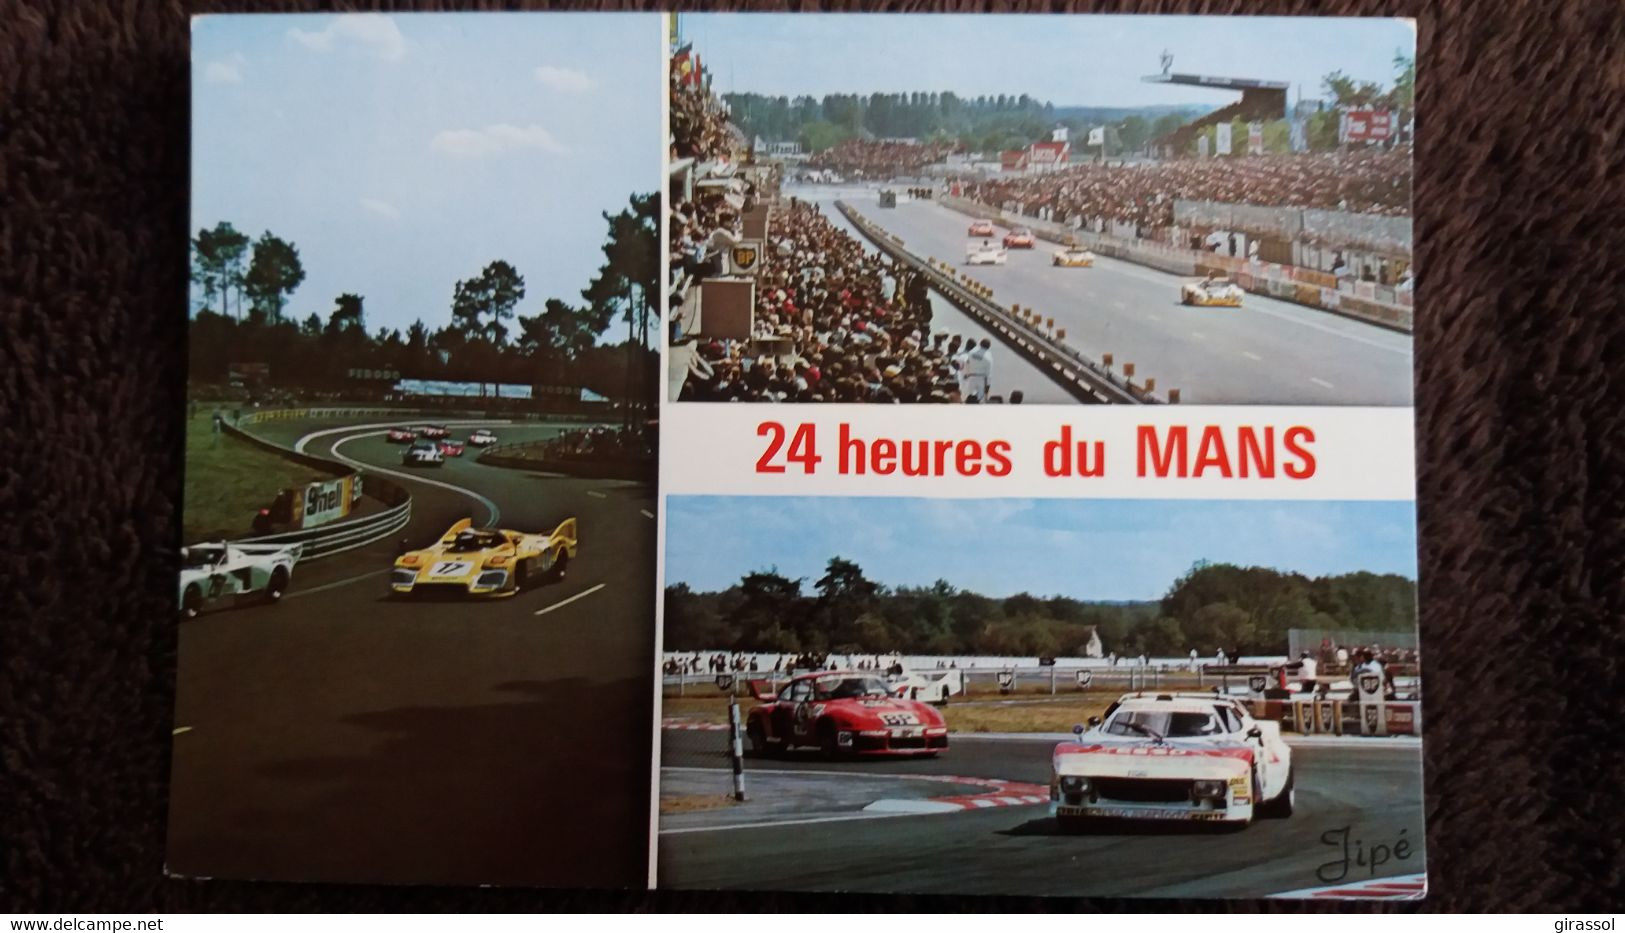 CPM LE MANS SARTHE CIRCUIT DES 24 HEURES ED JIE 262 MULTI VUES VOITURE DE SPORT - Le Mans